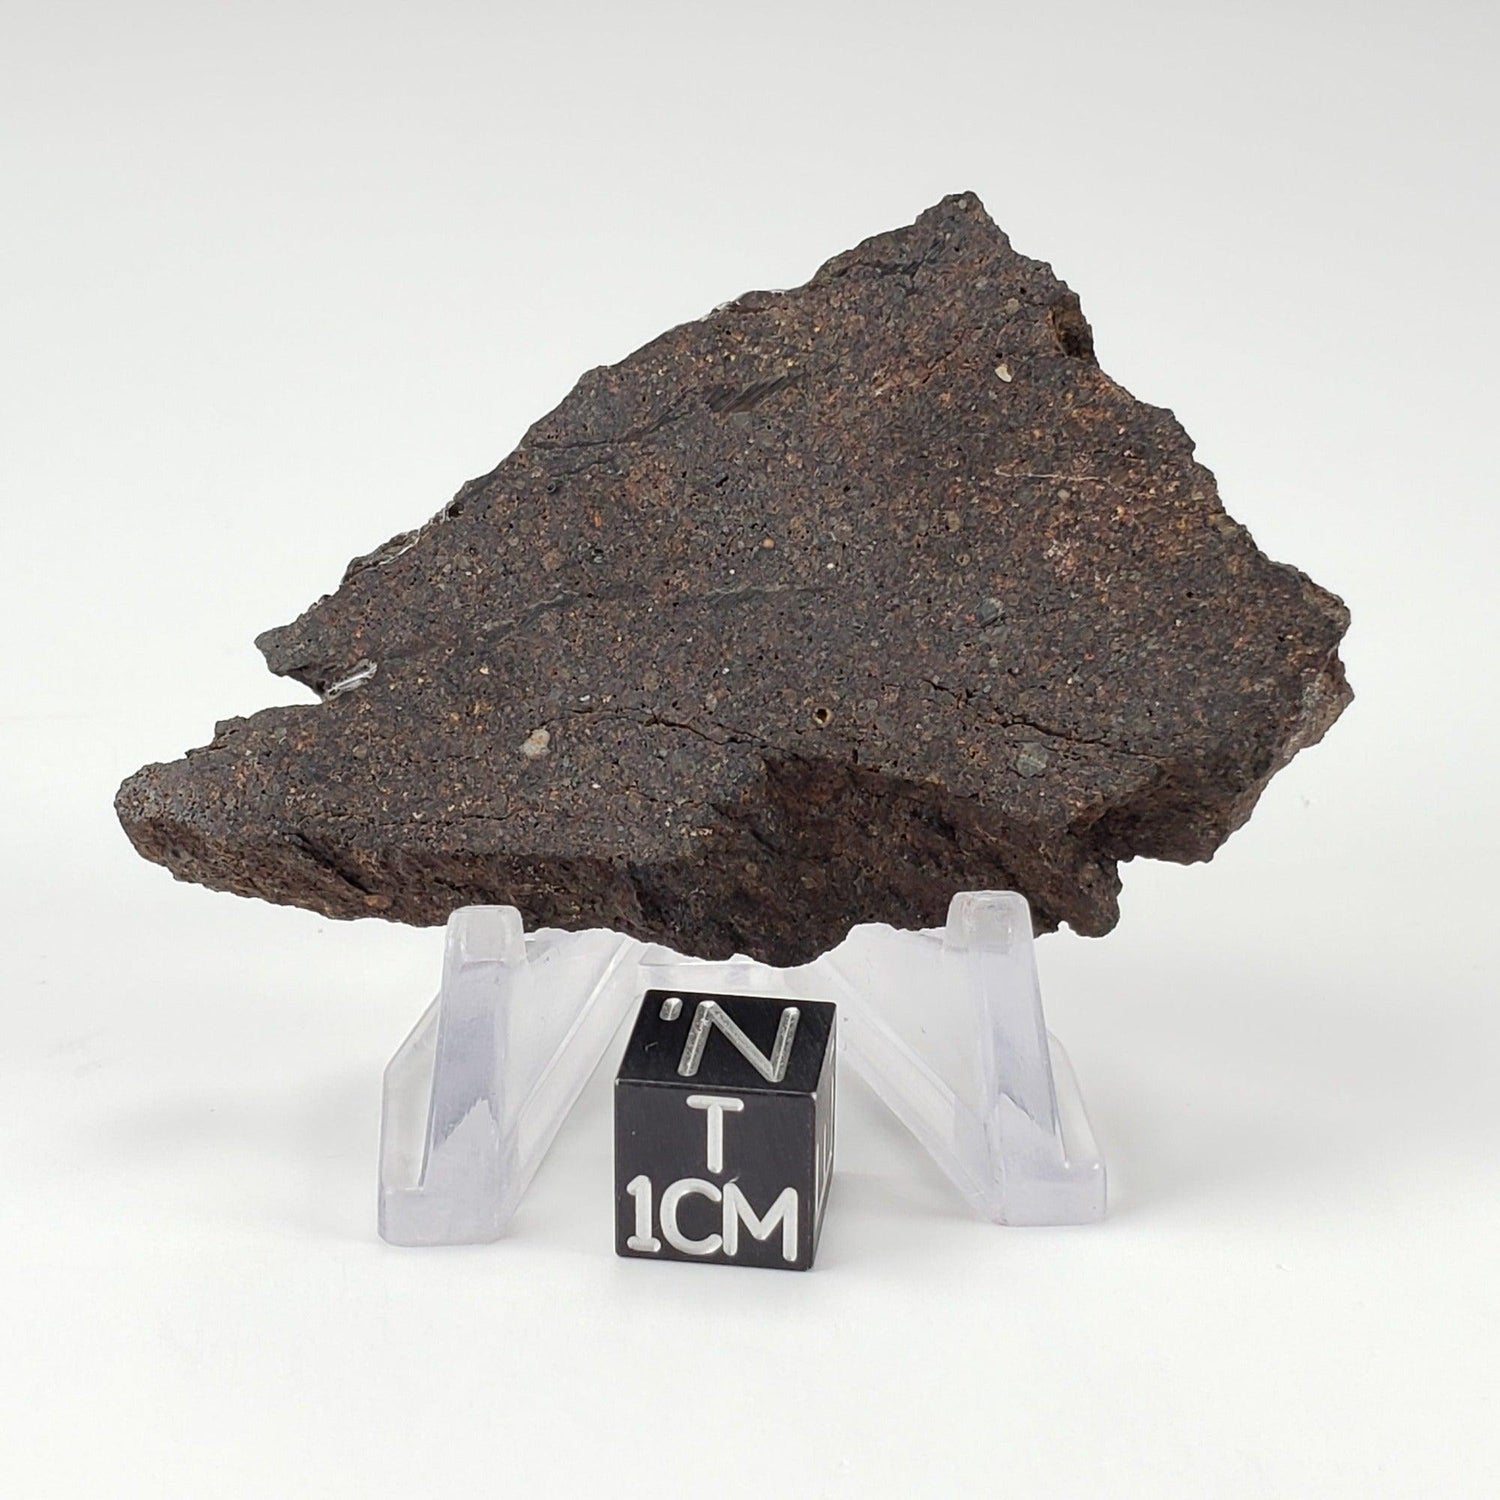 Dhofar 224 Meteorite | 23.11 Grams | Full Slice | Rare H4 Chondrite | Sahara